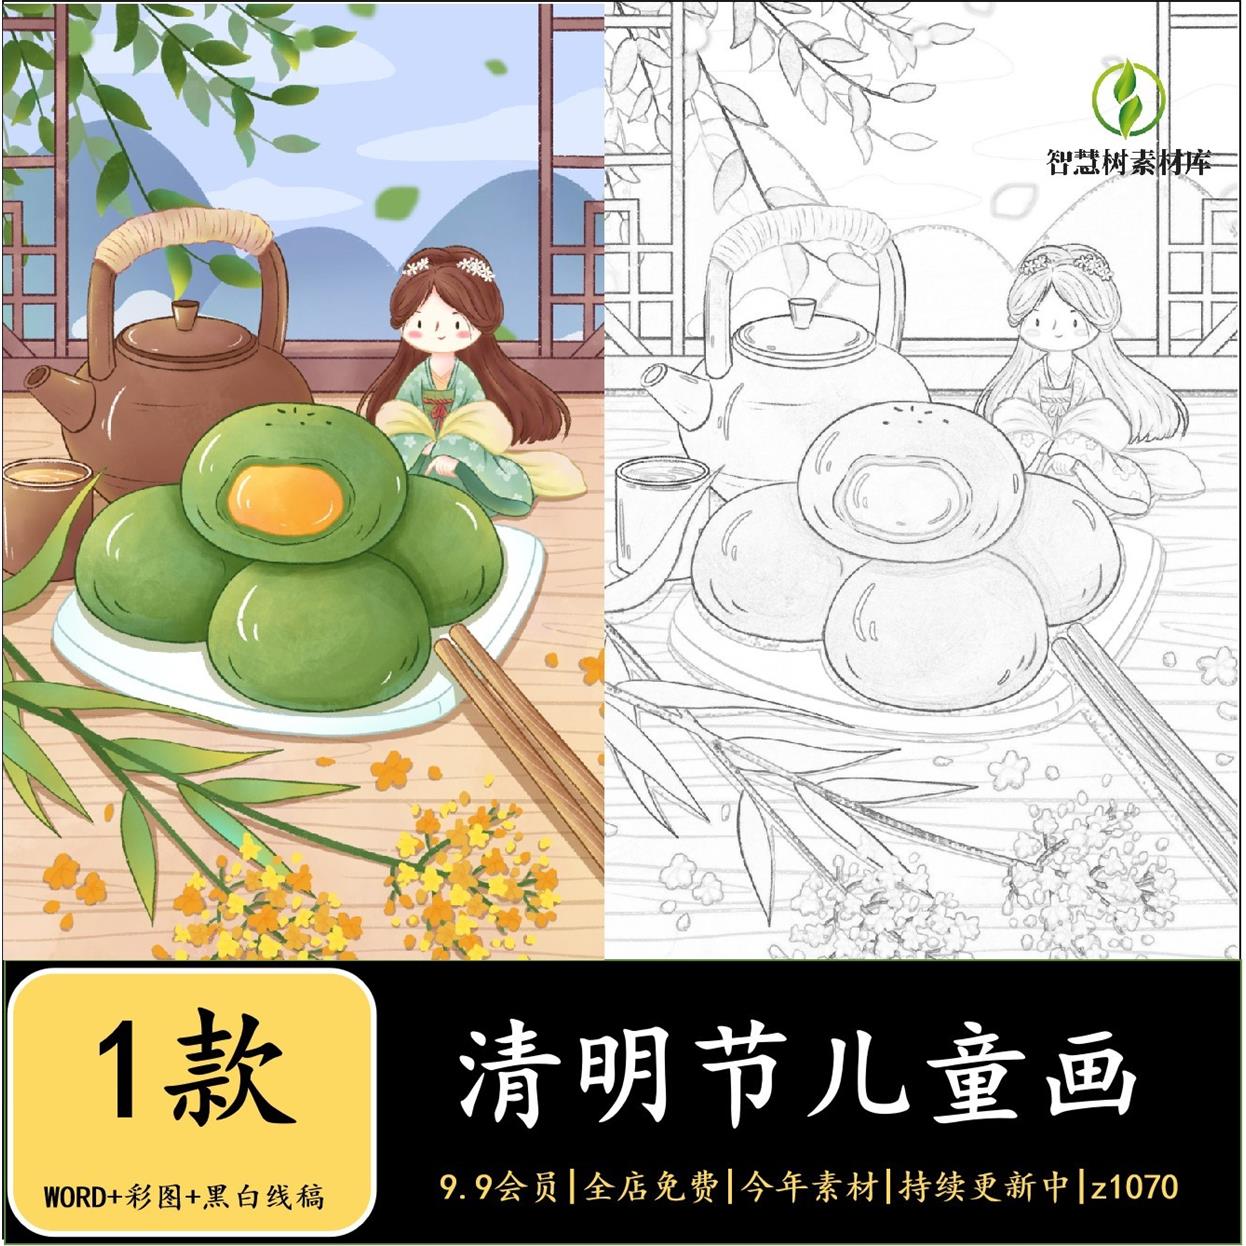 清明节手抄报电子模板女孩缅怀中国传统节日习俗踏青美食吃青团